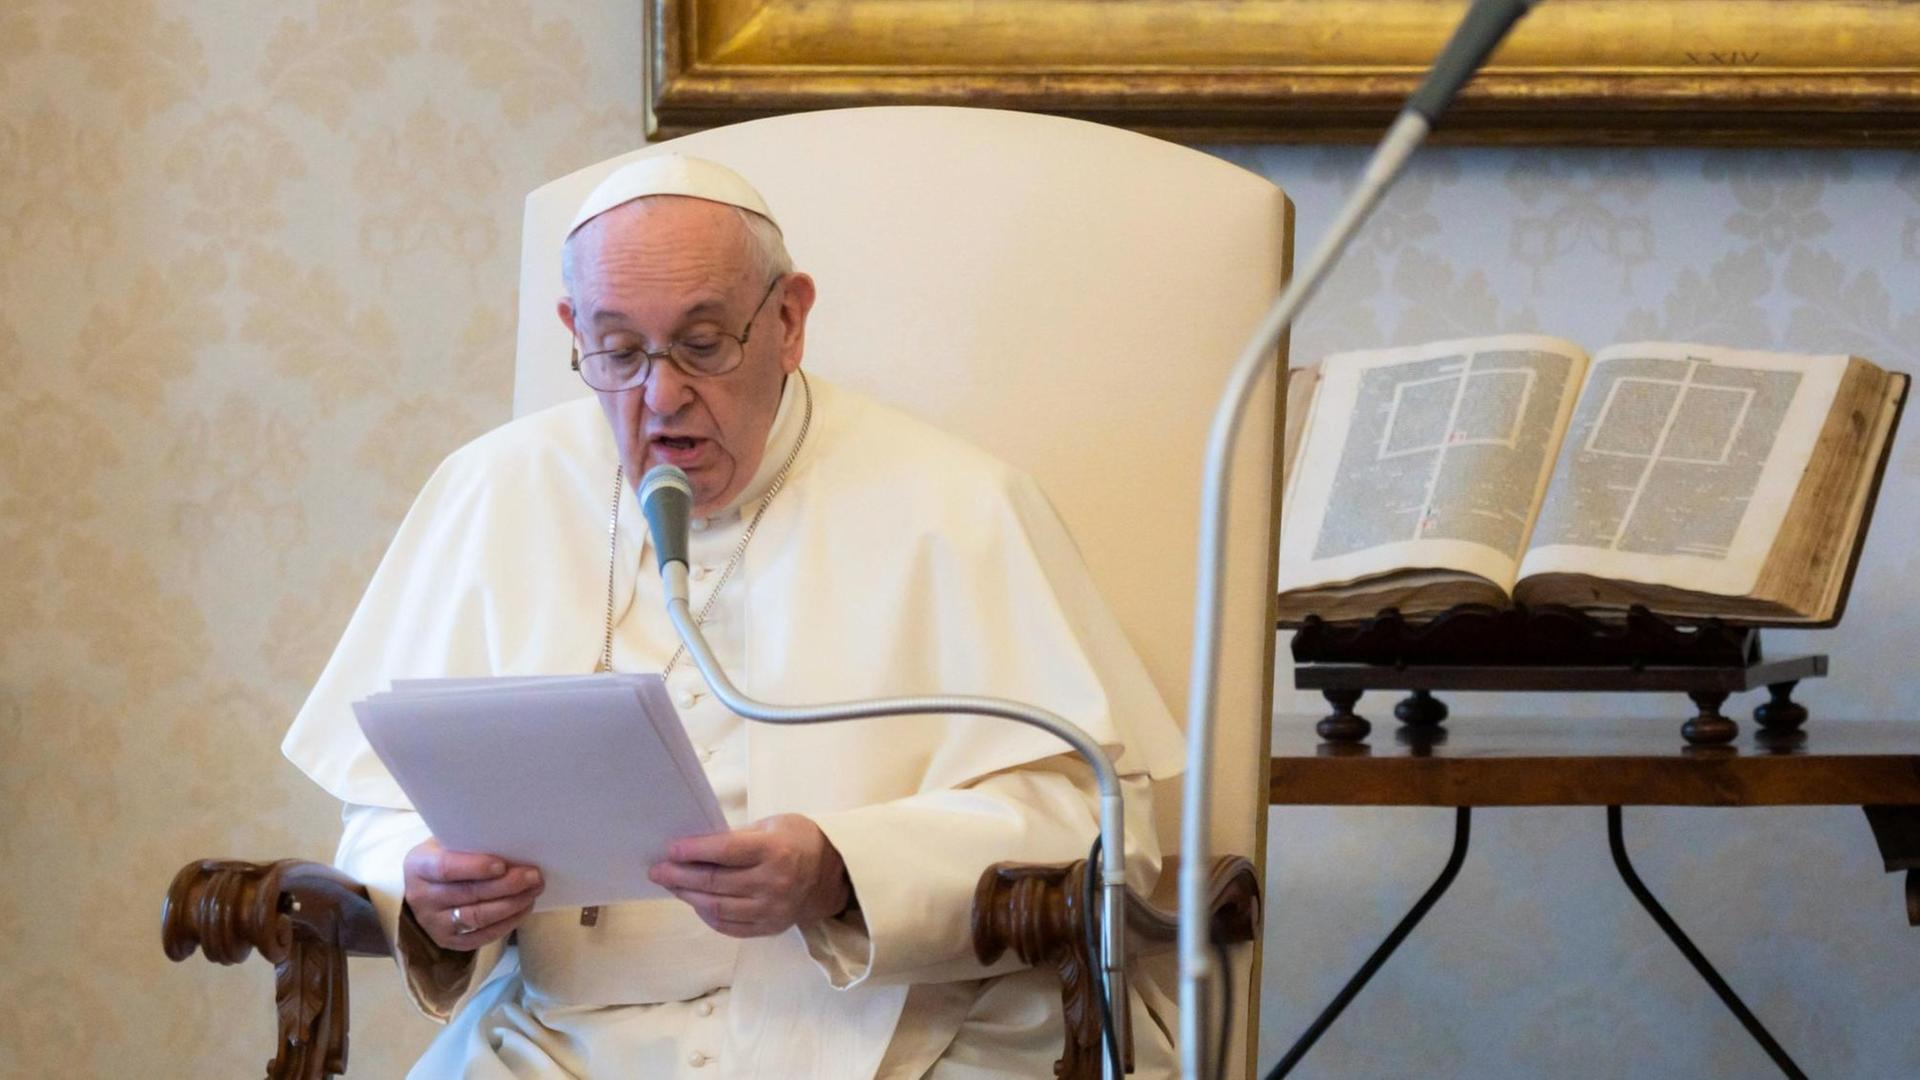 Papst Franziskus sitzt in einem Stuhl und liest etwas vor.